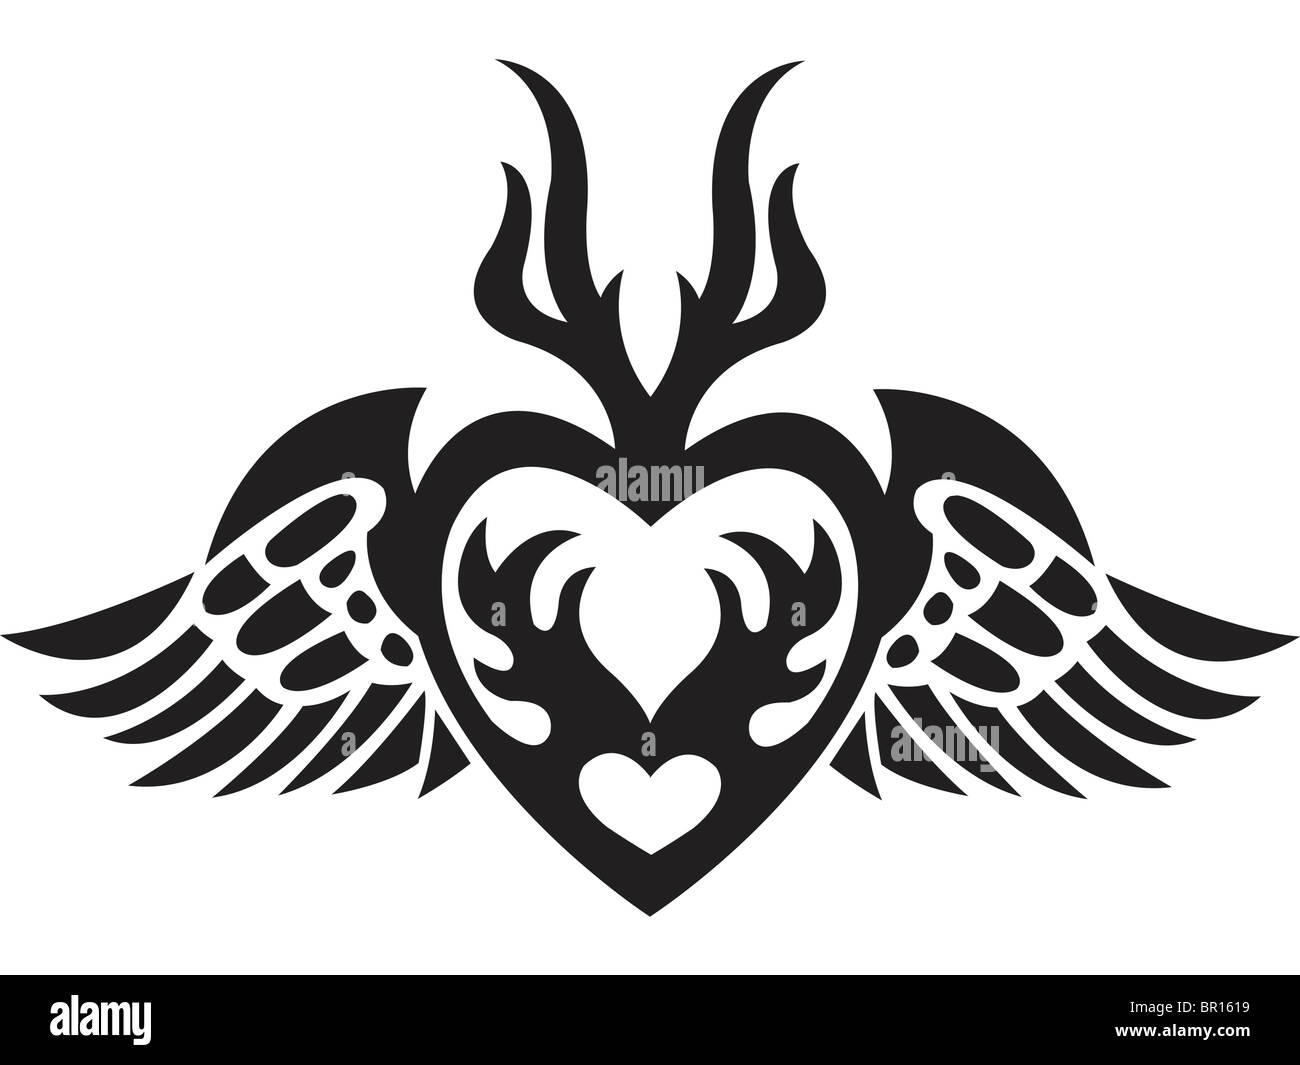 Eine schwarz-weiß Version einer Schablone ein Herz mit Flügeln Stockfoto